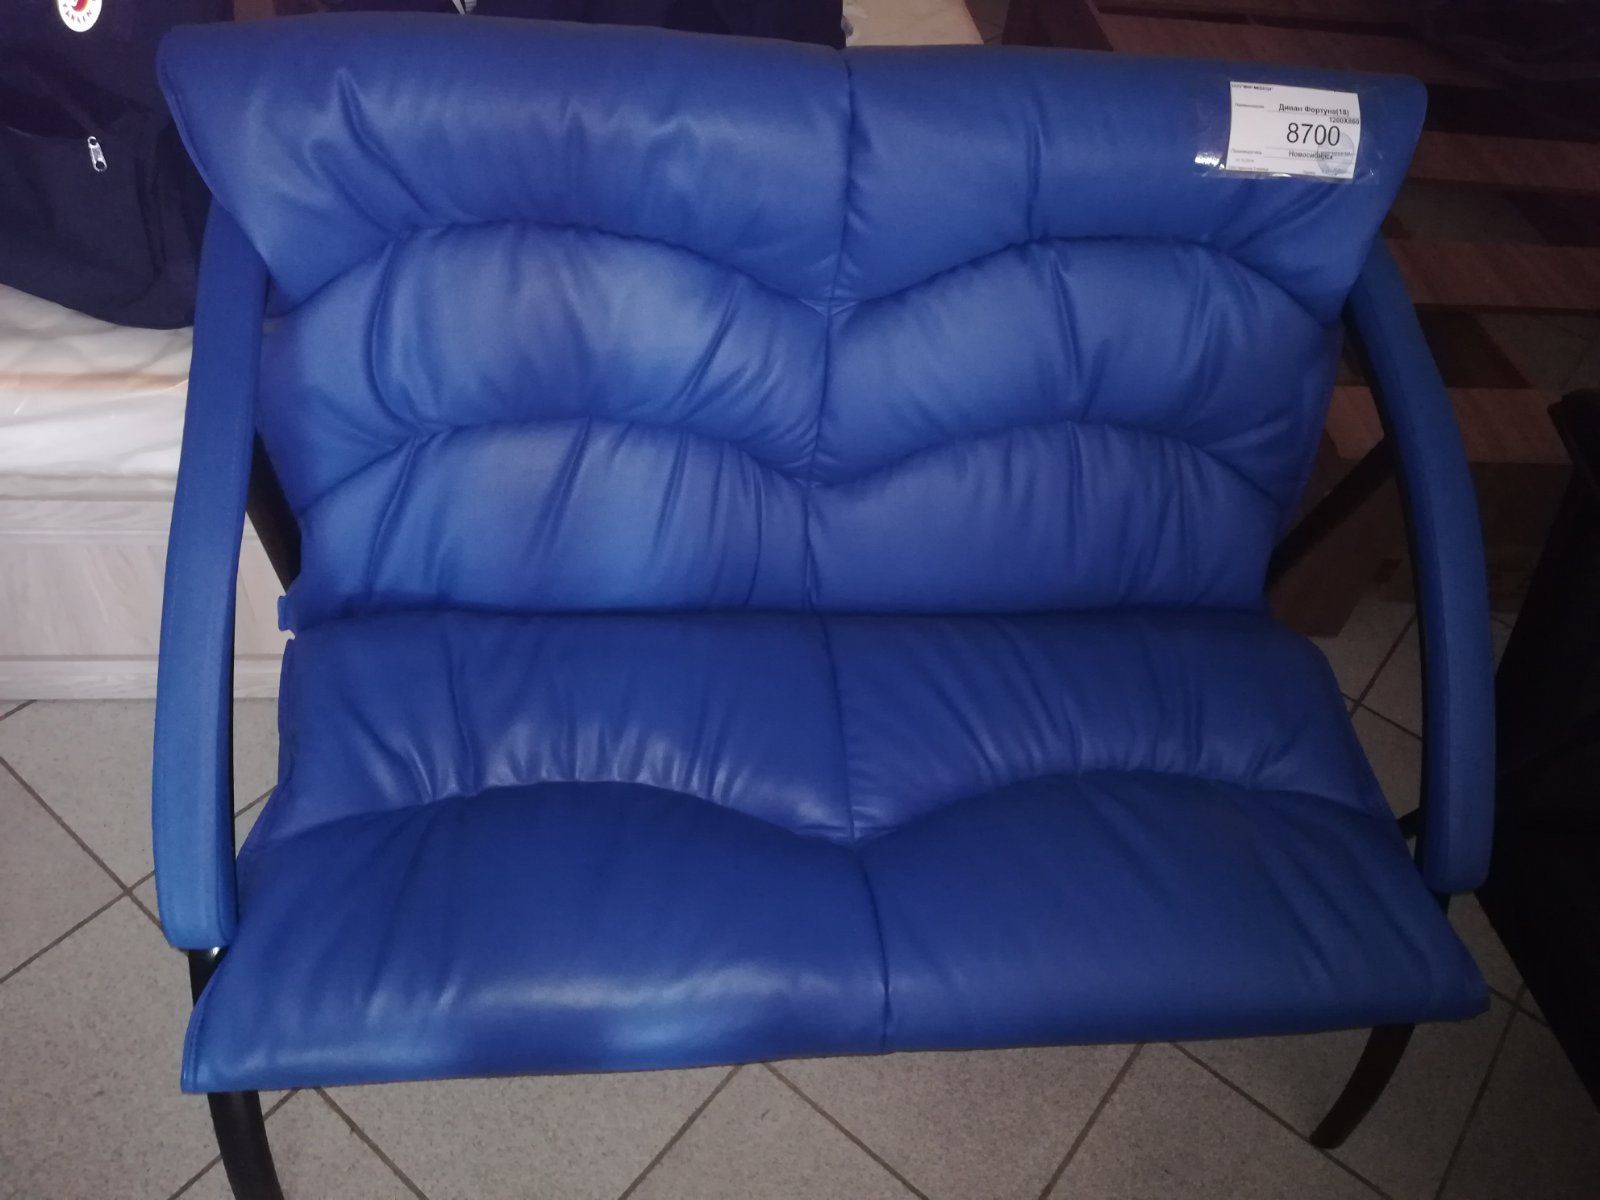 Кресла и стулья рф